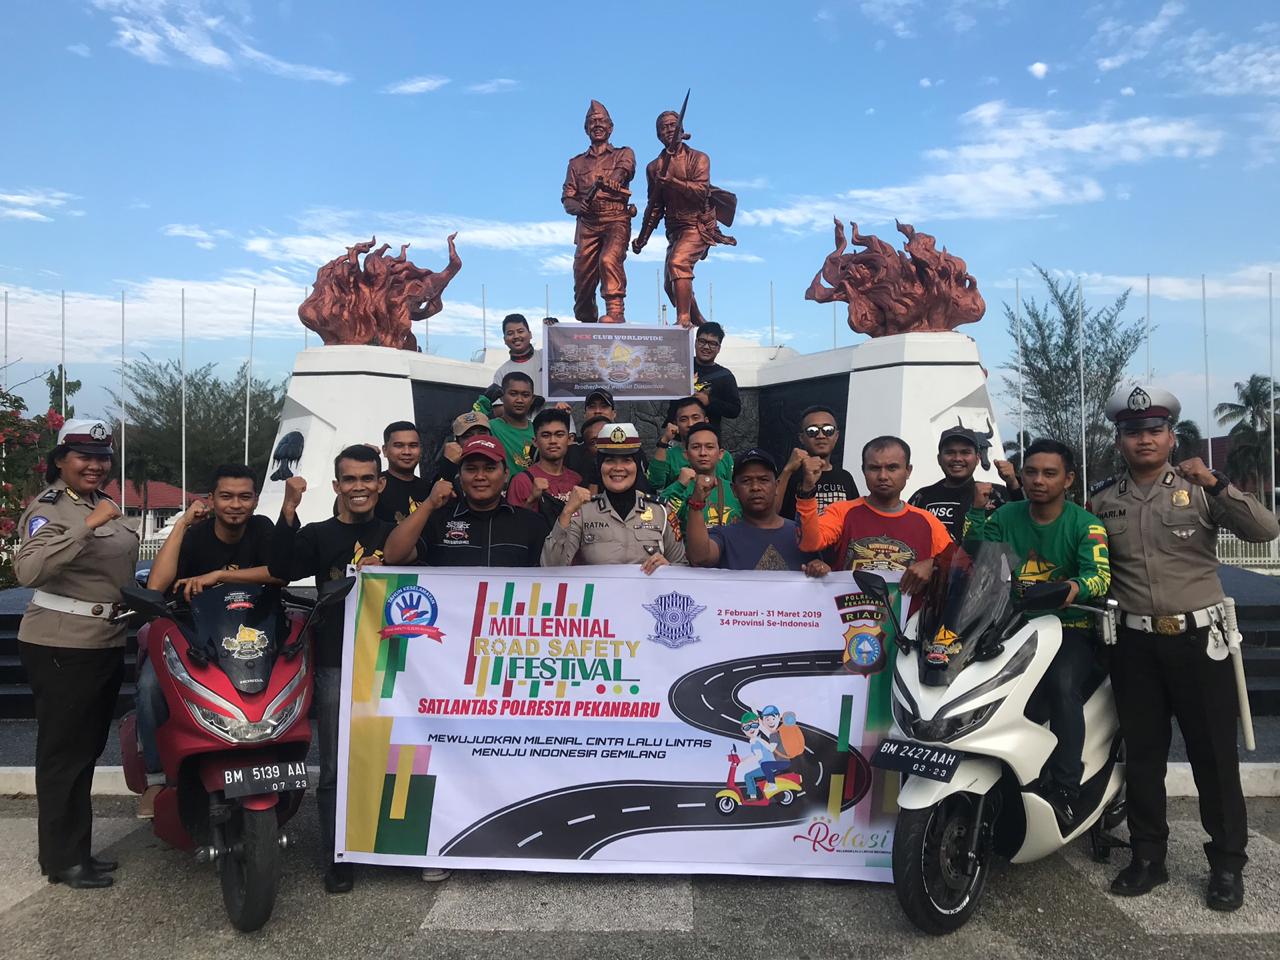 Millennial Road Safety Festival di Riau Bakal Epik, Ini Jadwal dan Agendanya